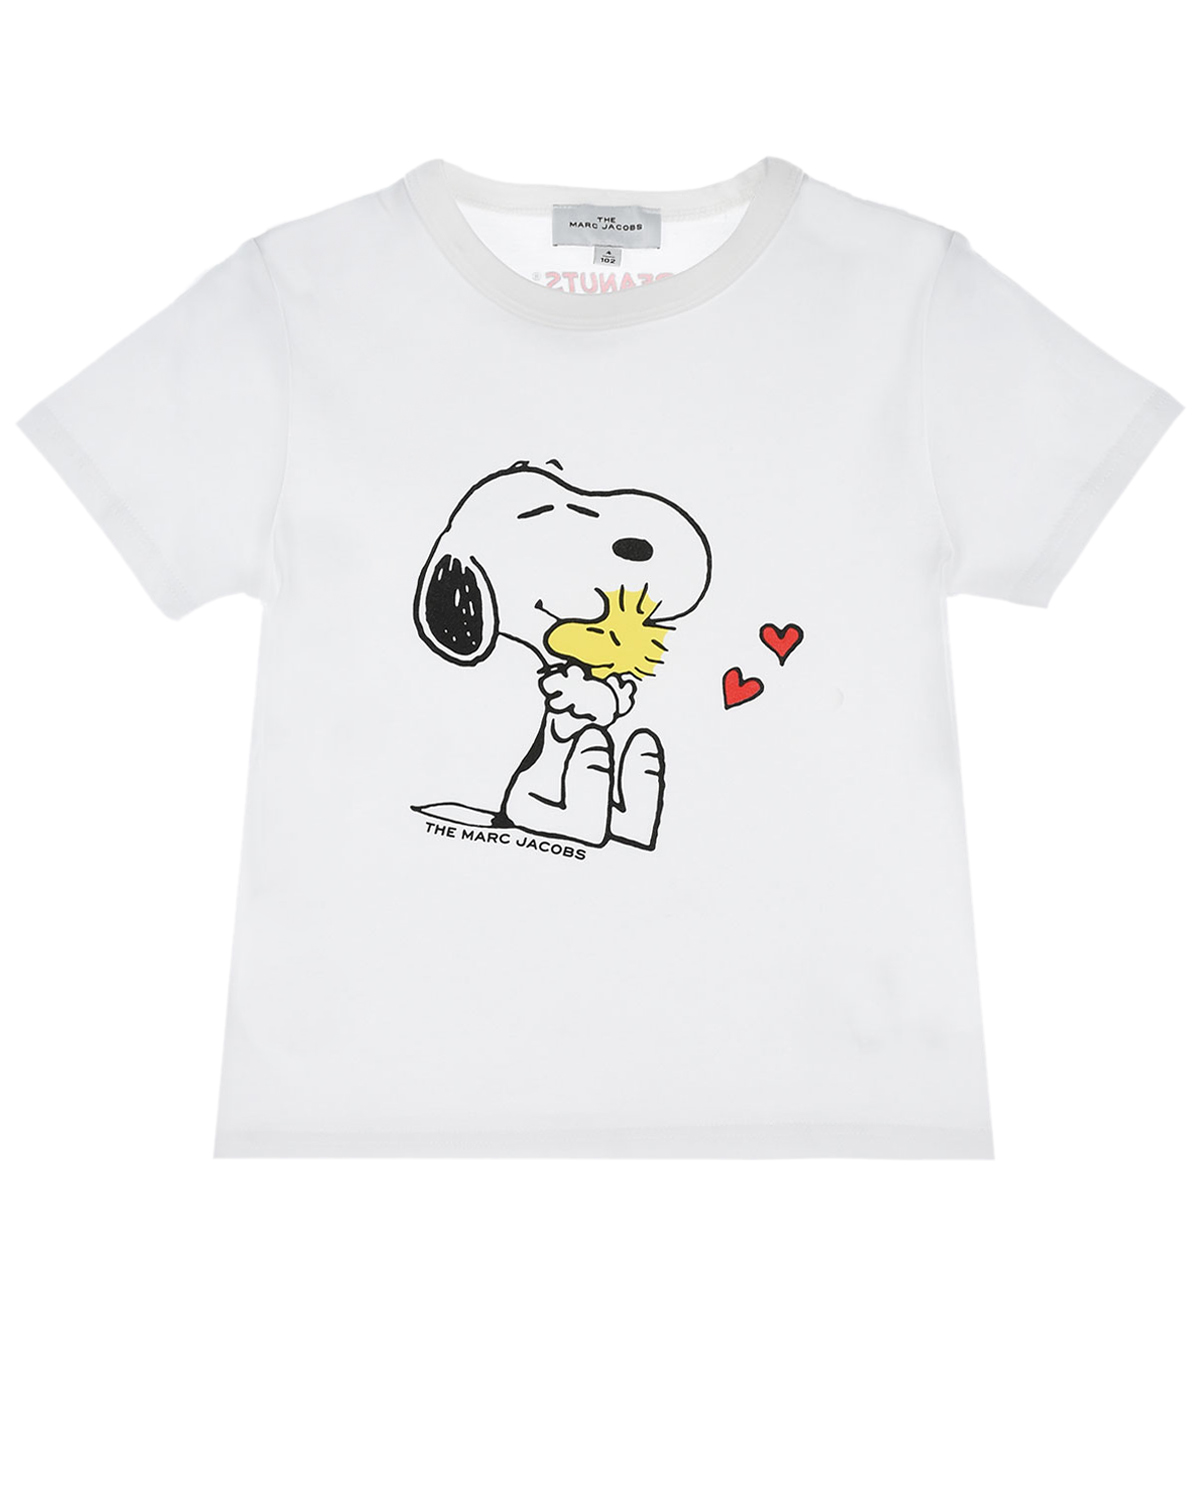 Белая футболка с принтом "Snoopy" Marc Jacobs (The) детская, размер 98, цвет белый Белая футболка с принтом "Snoopy" Marc Jacobs (The) детская - фото 1